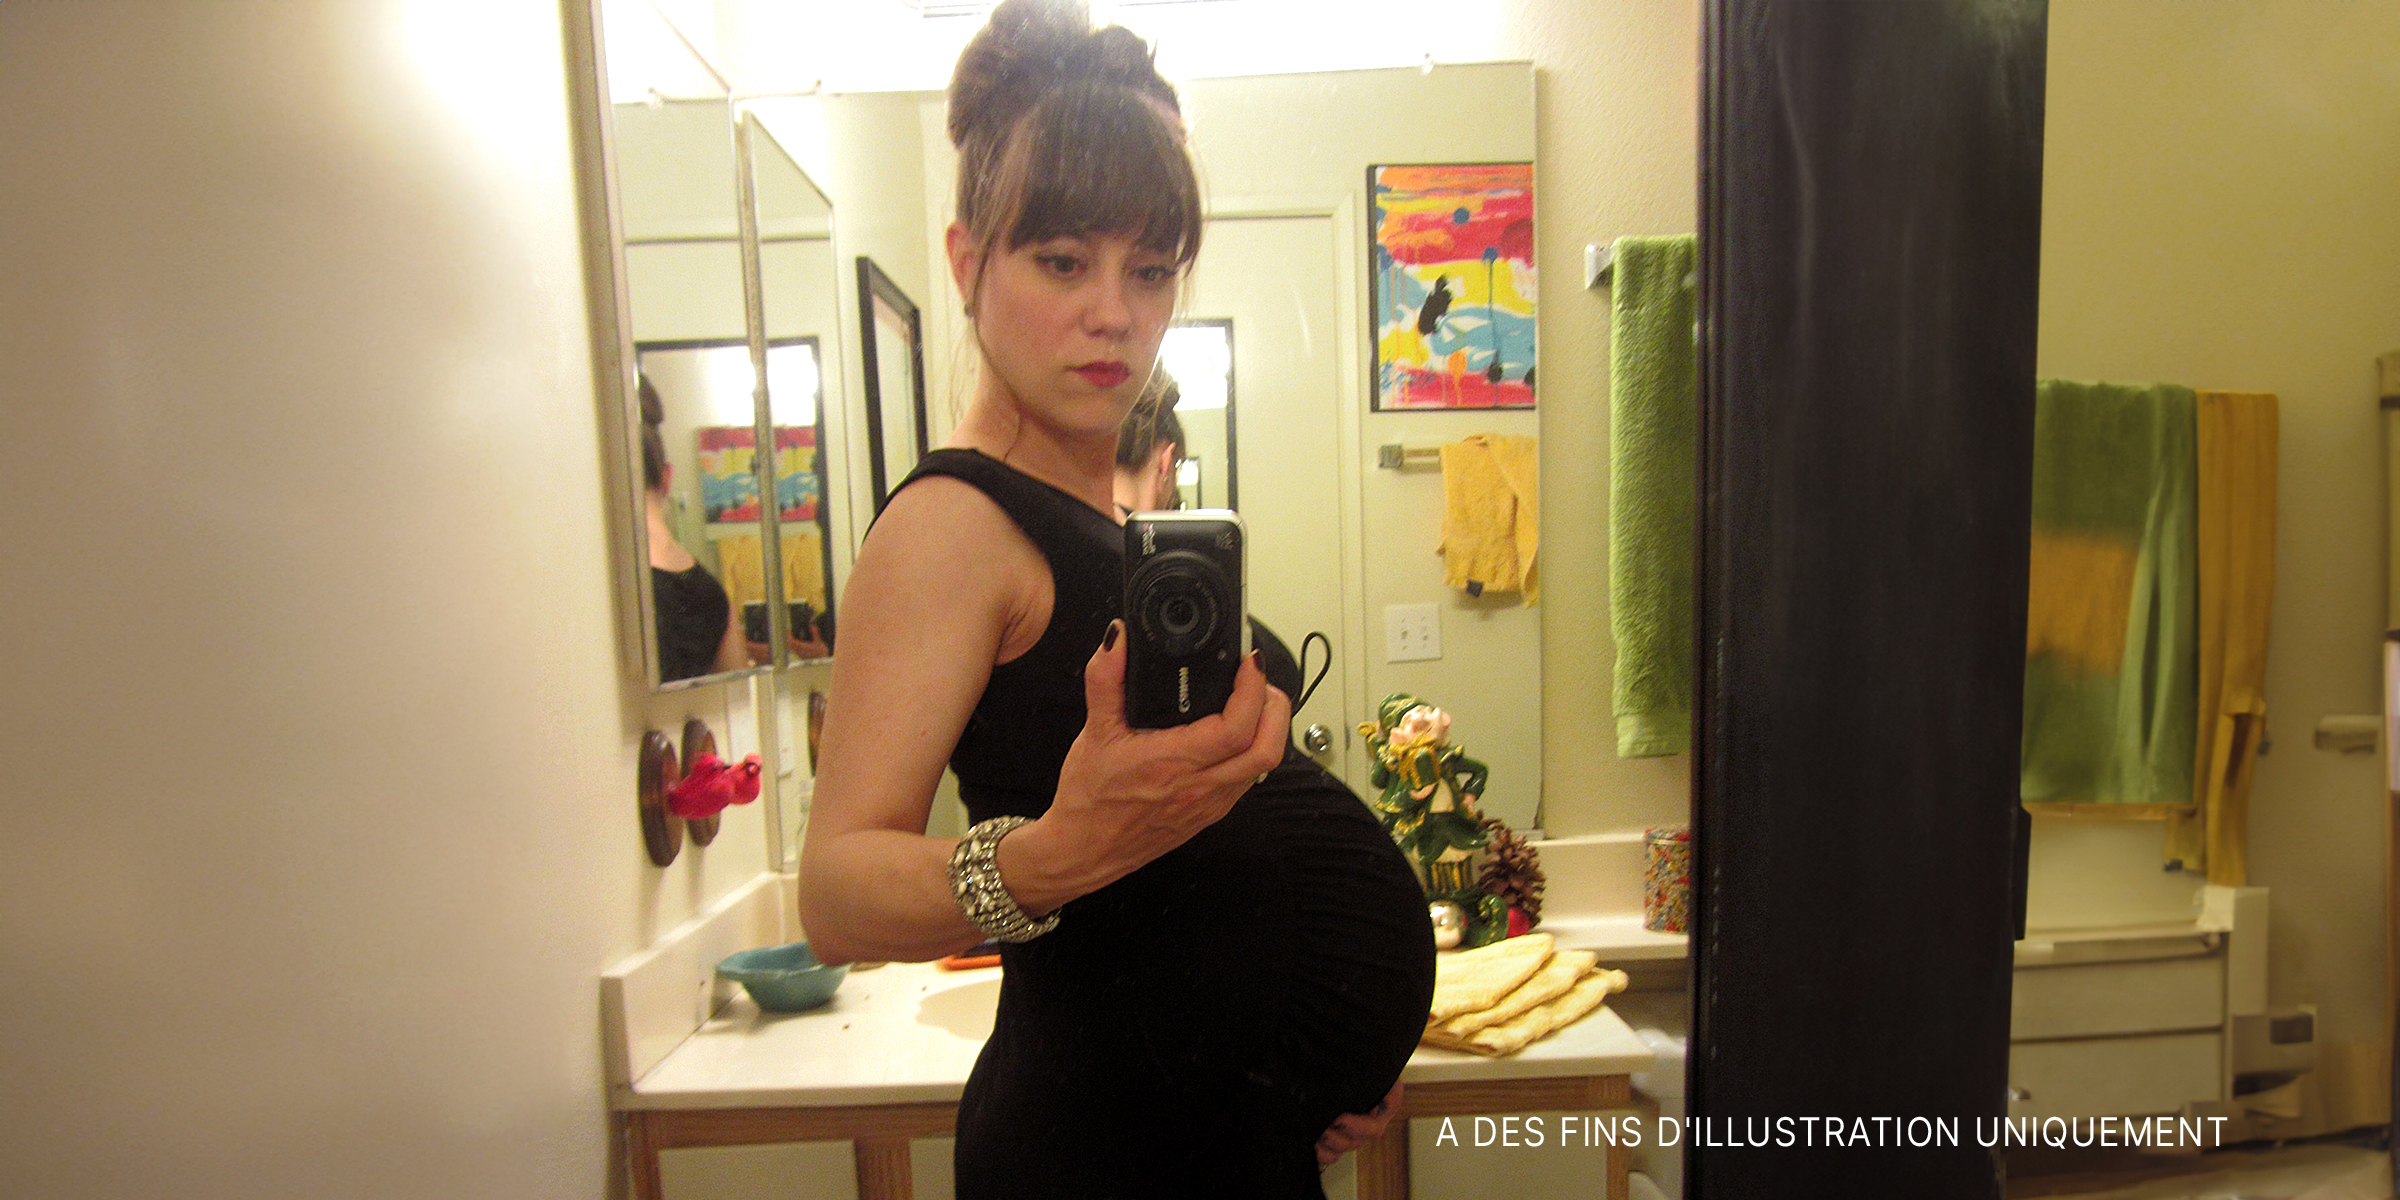 Une femme enceinte qui prend un selfie | Source : Flickr/Pretty Poo Eater/CC BY-SA 2.0